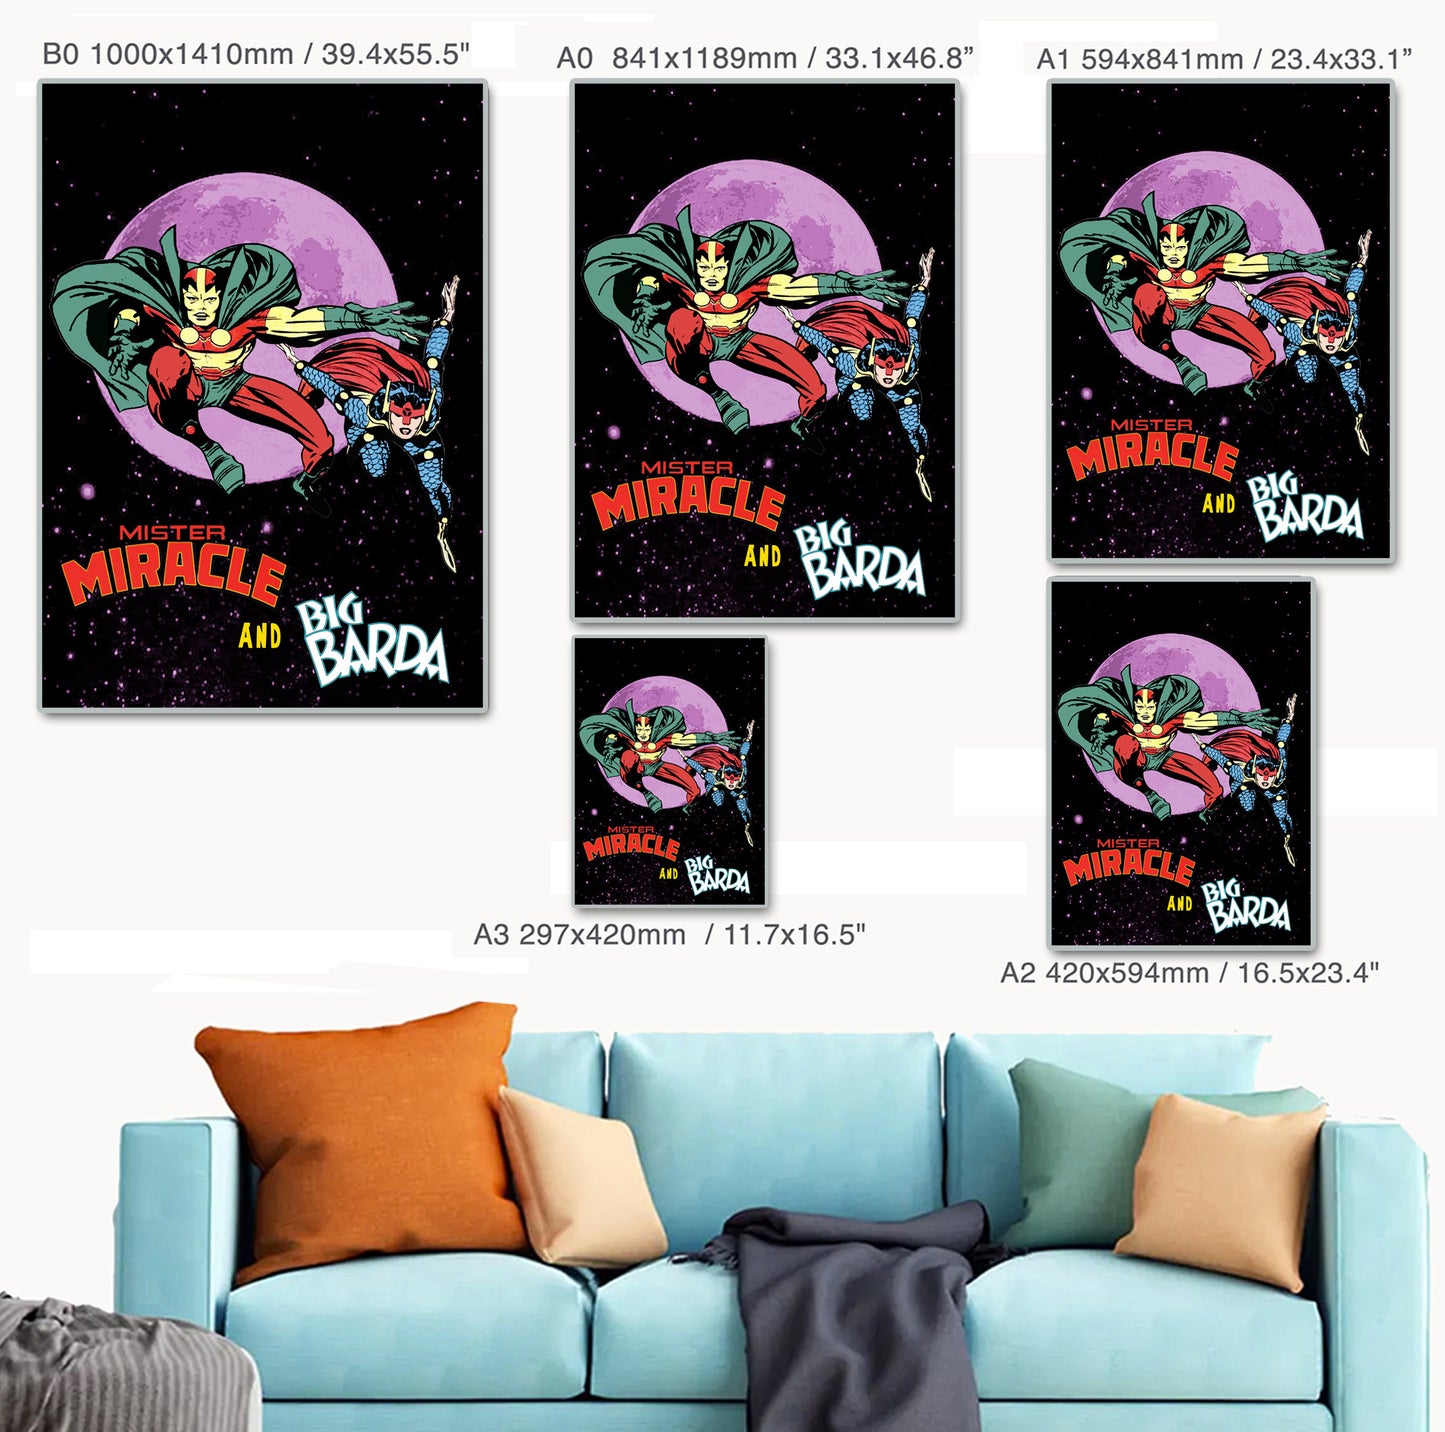 Mister Miracle and Big Barda - Art Print/Poster